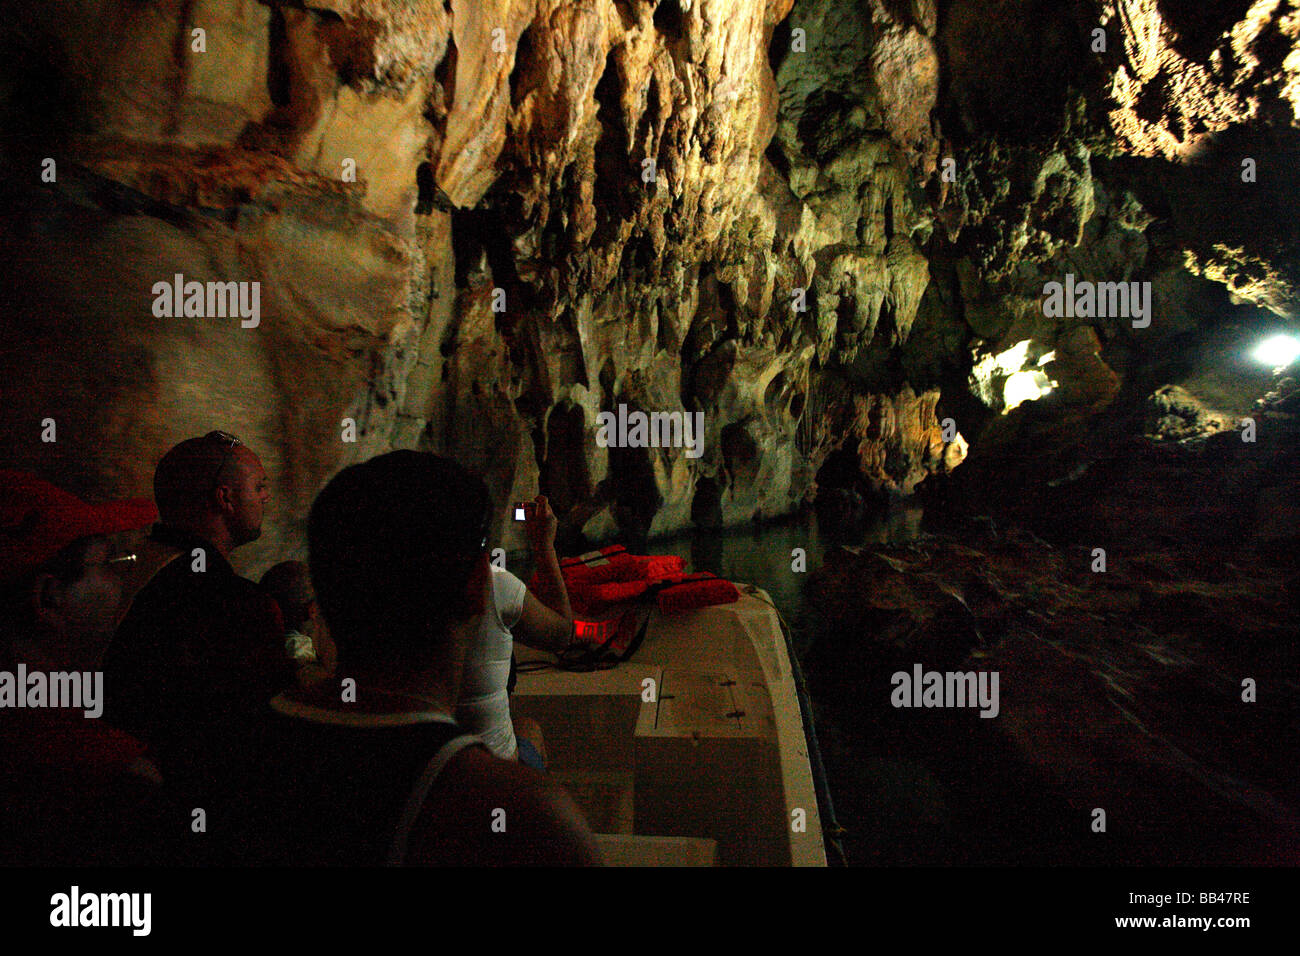 La Cueva del Indio in the Vinales Valley, Cuba. Stock Photo